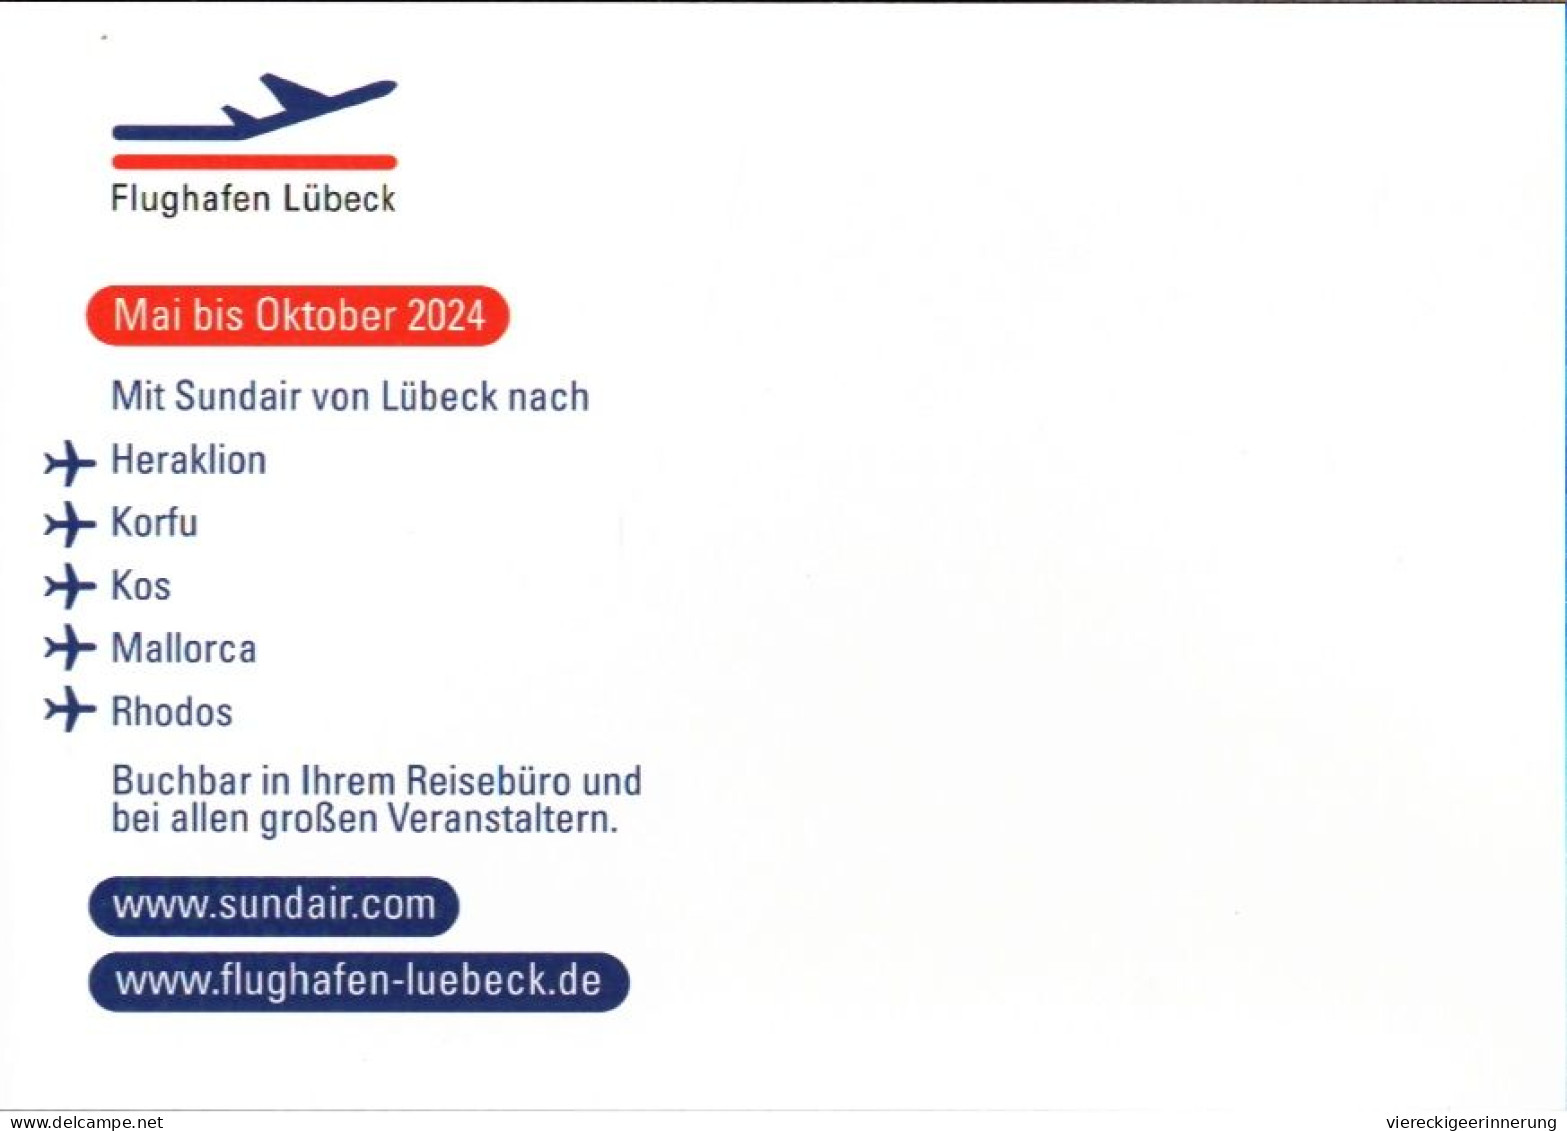 ! Moderne Ansichtskarte Flughafen Lübeck, Schön Schnell Abheben, 2024, Sund Air, Heraklion, Korfu, Kos, Mallorca, Rhodos - Aeródromos